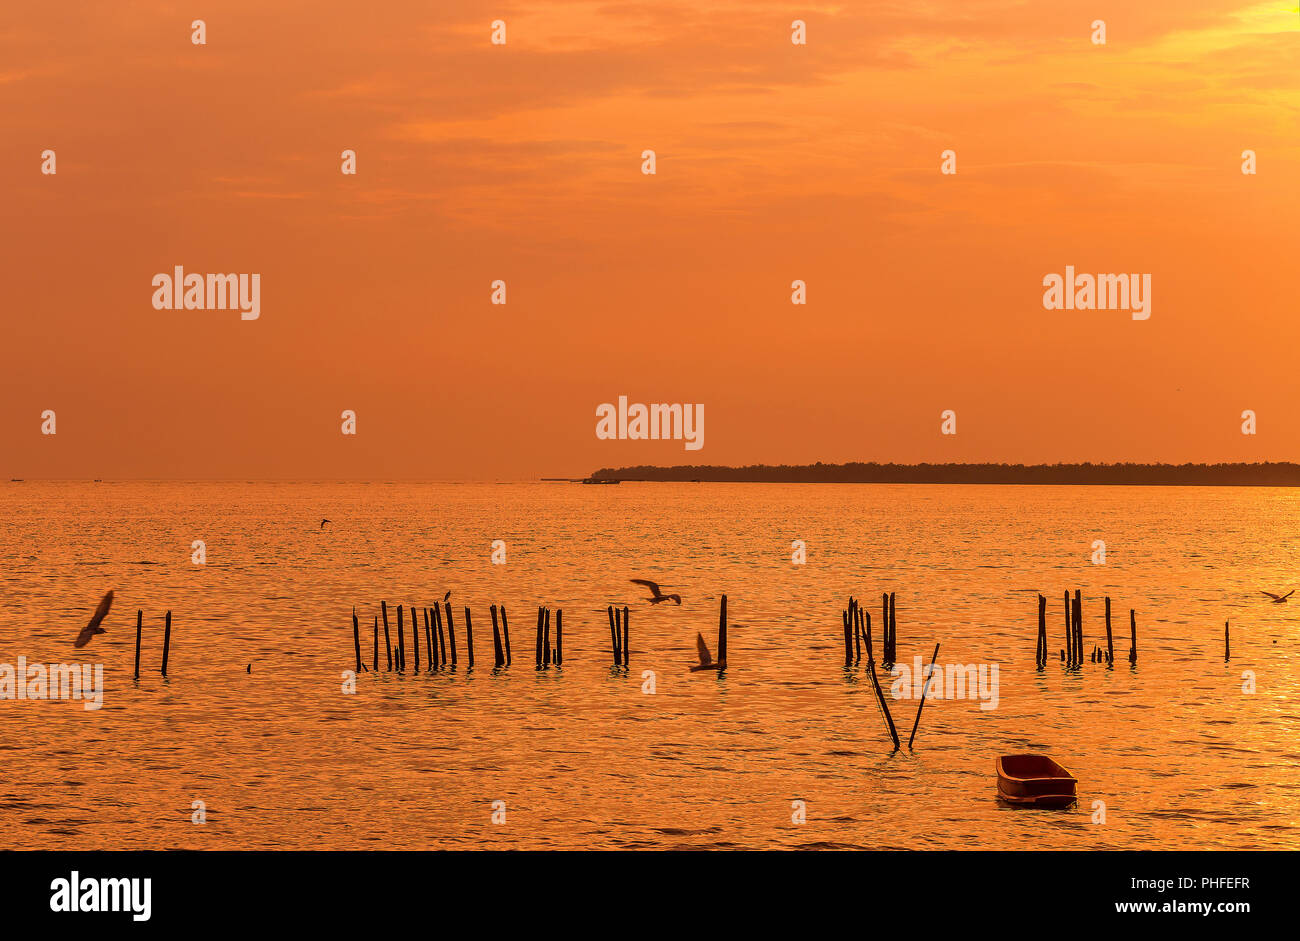 Lonely in legno barca dei pescatori con i gabbiani quando il tramonto / alba sul mare una libertà e un tranquillo Foto Stock